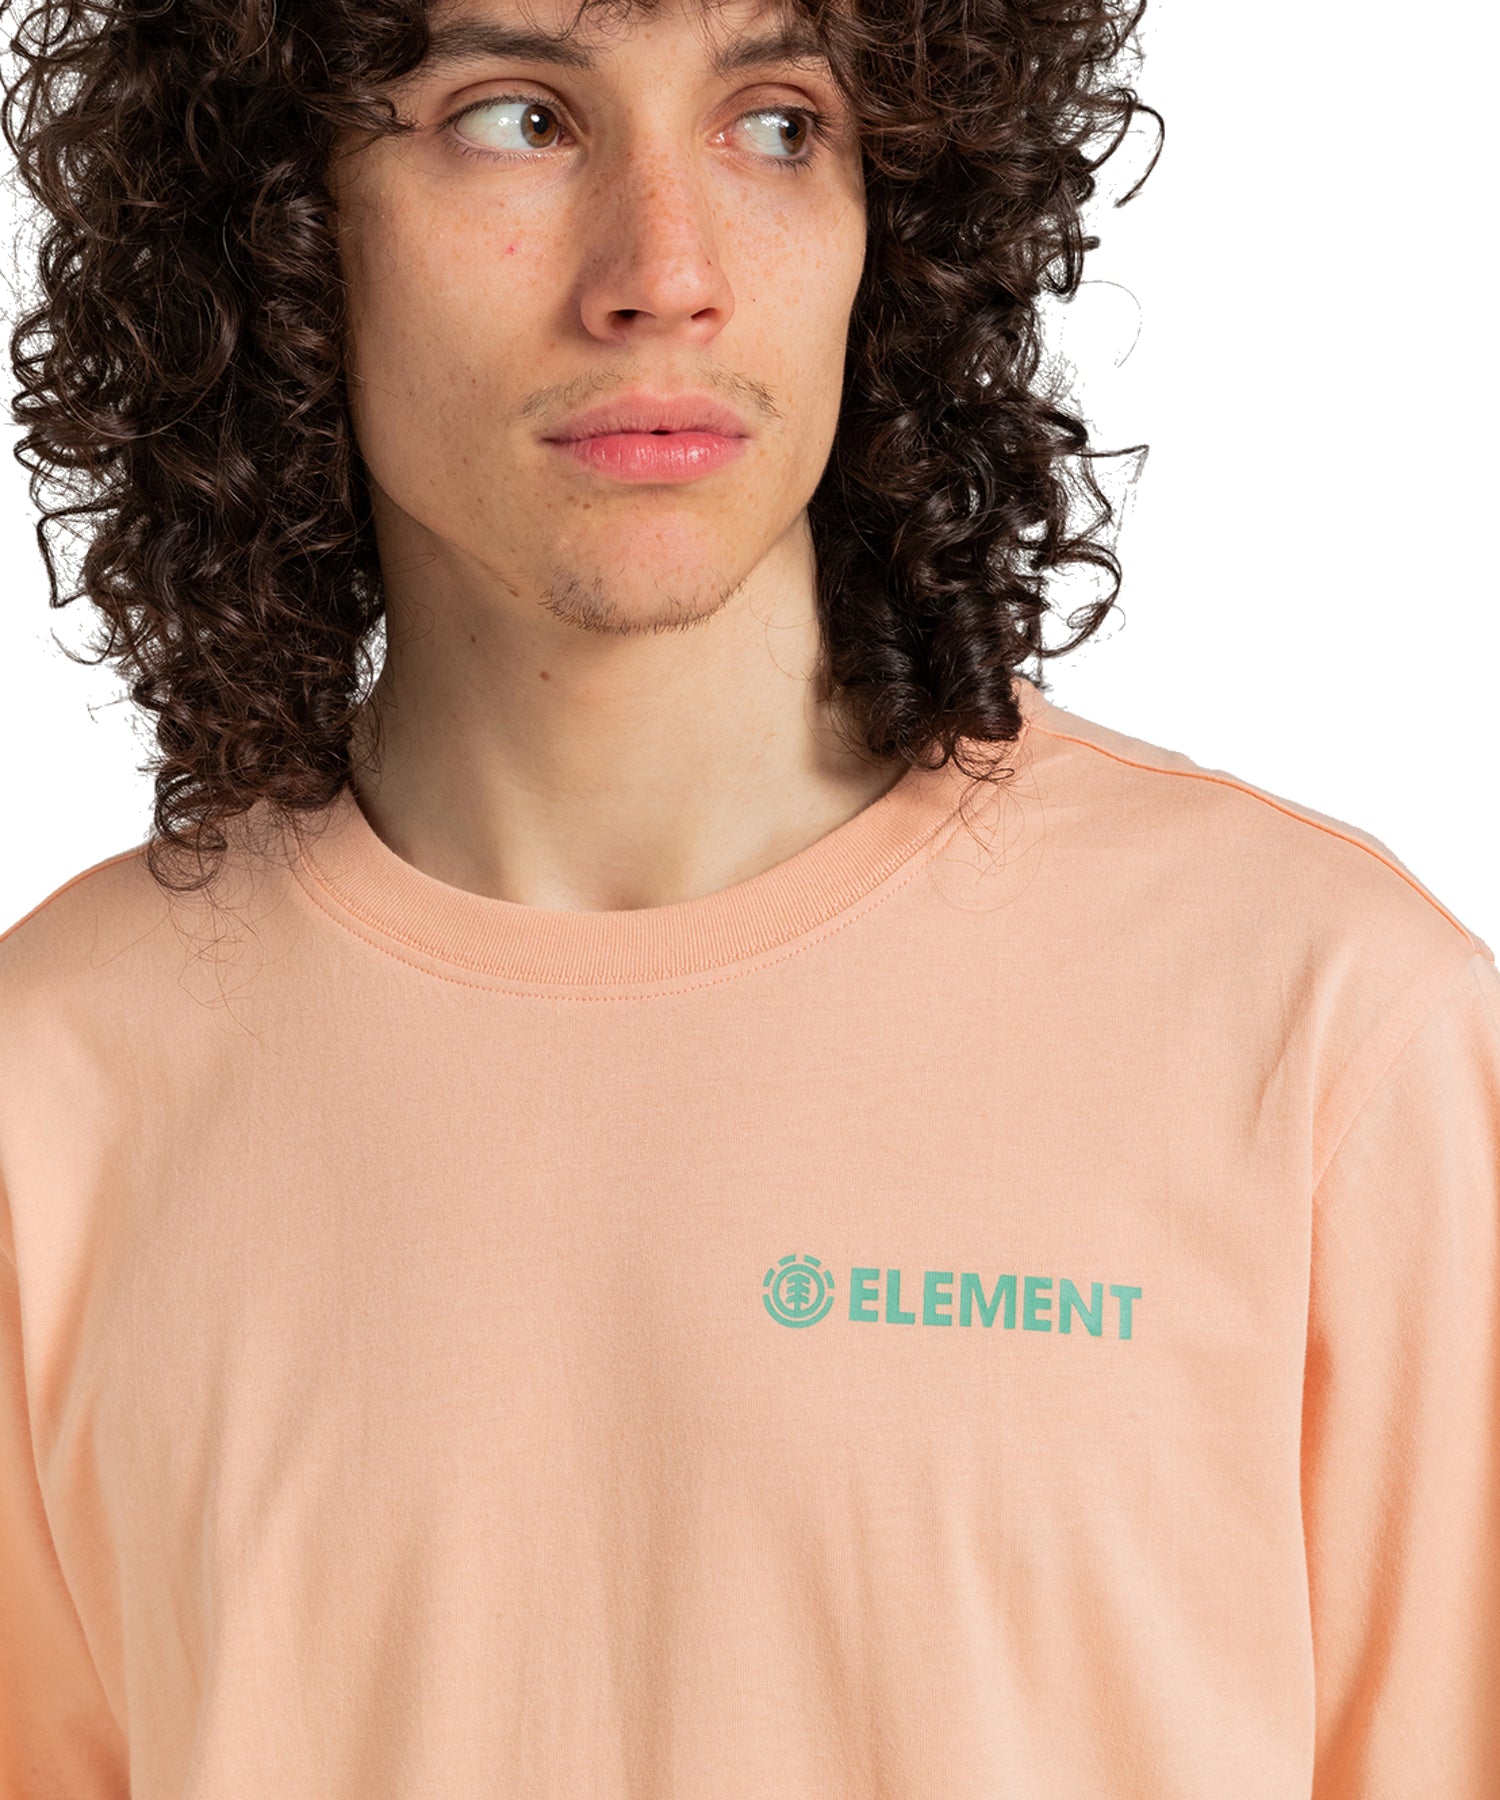 element-camiseta-hombre-blazin-chest-color-albaricoque-pequeño-logo-element-en-el-pecho-100%-algodón-orgánico